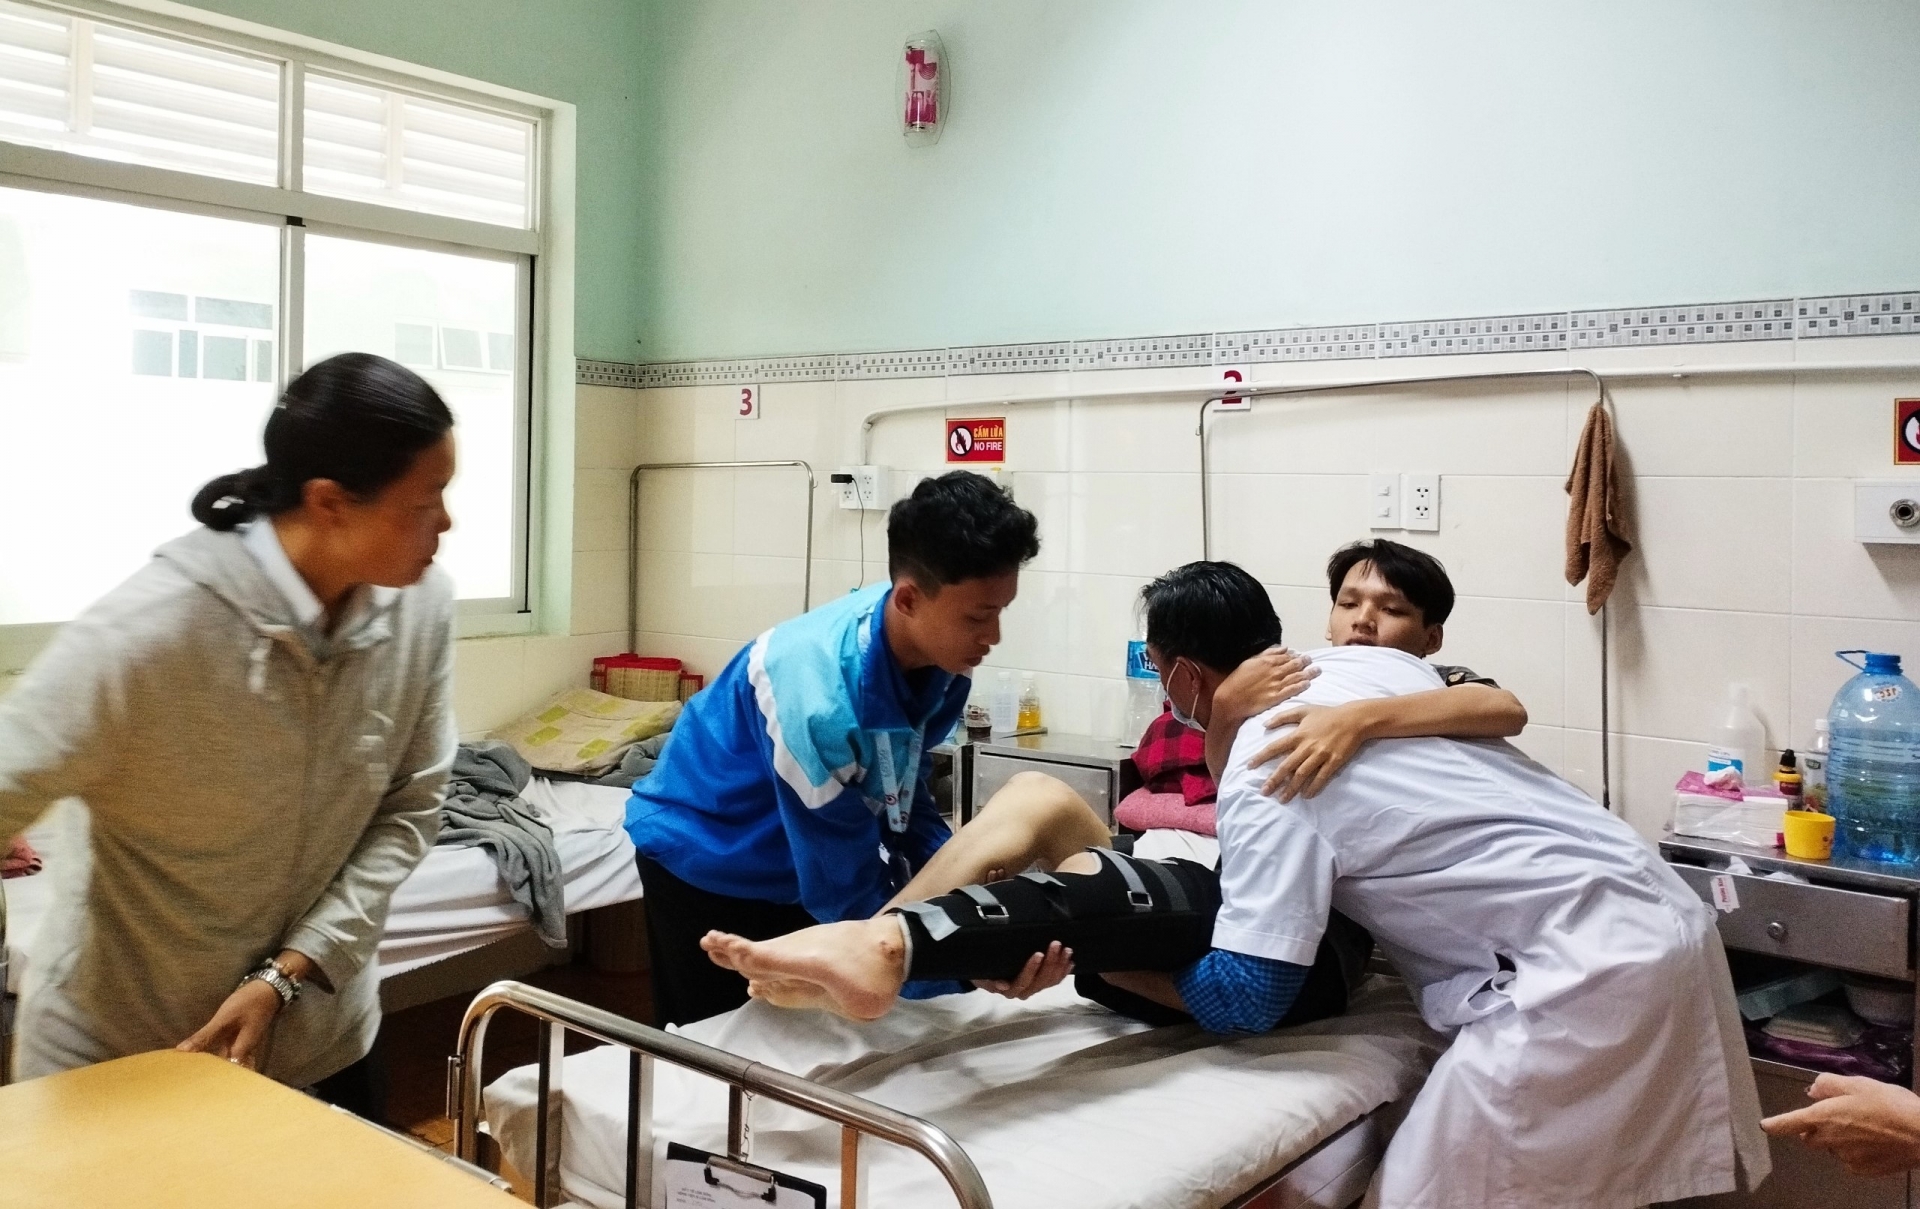 Vì lý do sức khỏe, em Tuấn Anh không thể dự thi các môn thi tốt nghiệp THPT vào sáng 28/6 và được chuyển trở lại Bệnh viện II Lâm Đồng tiếp tục điều trị